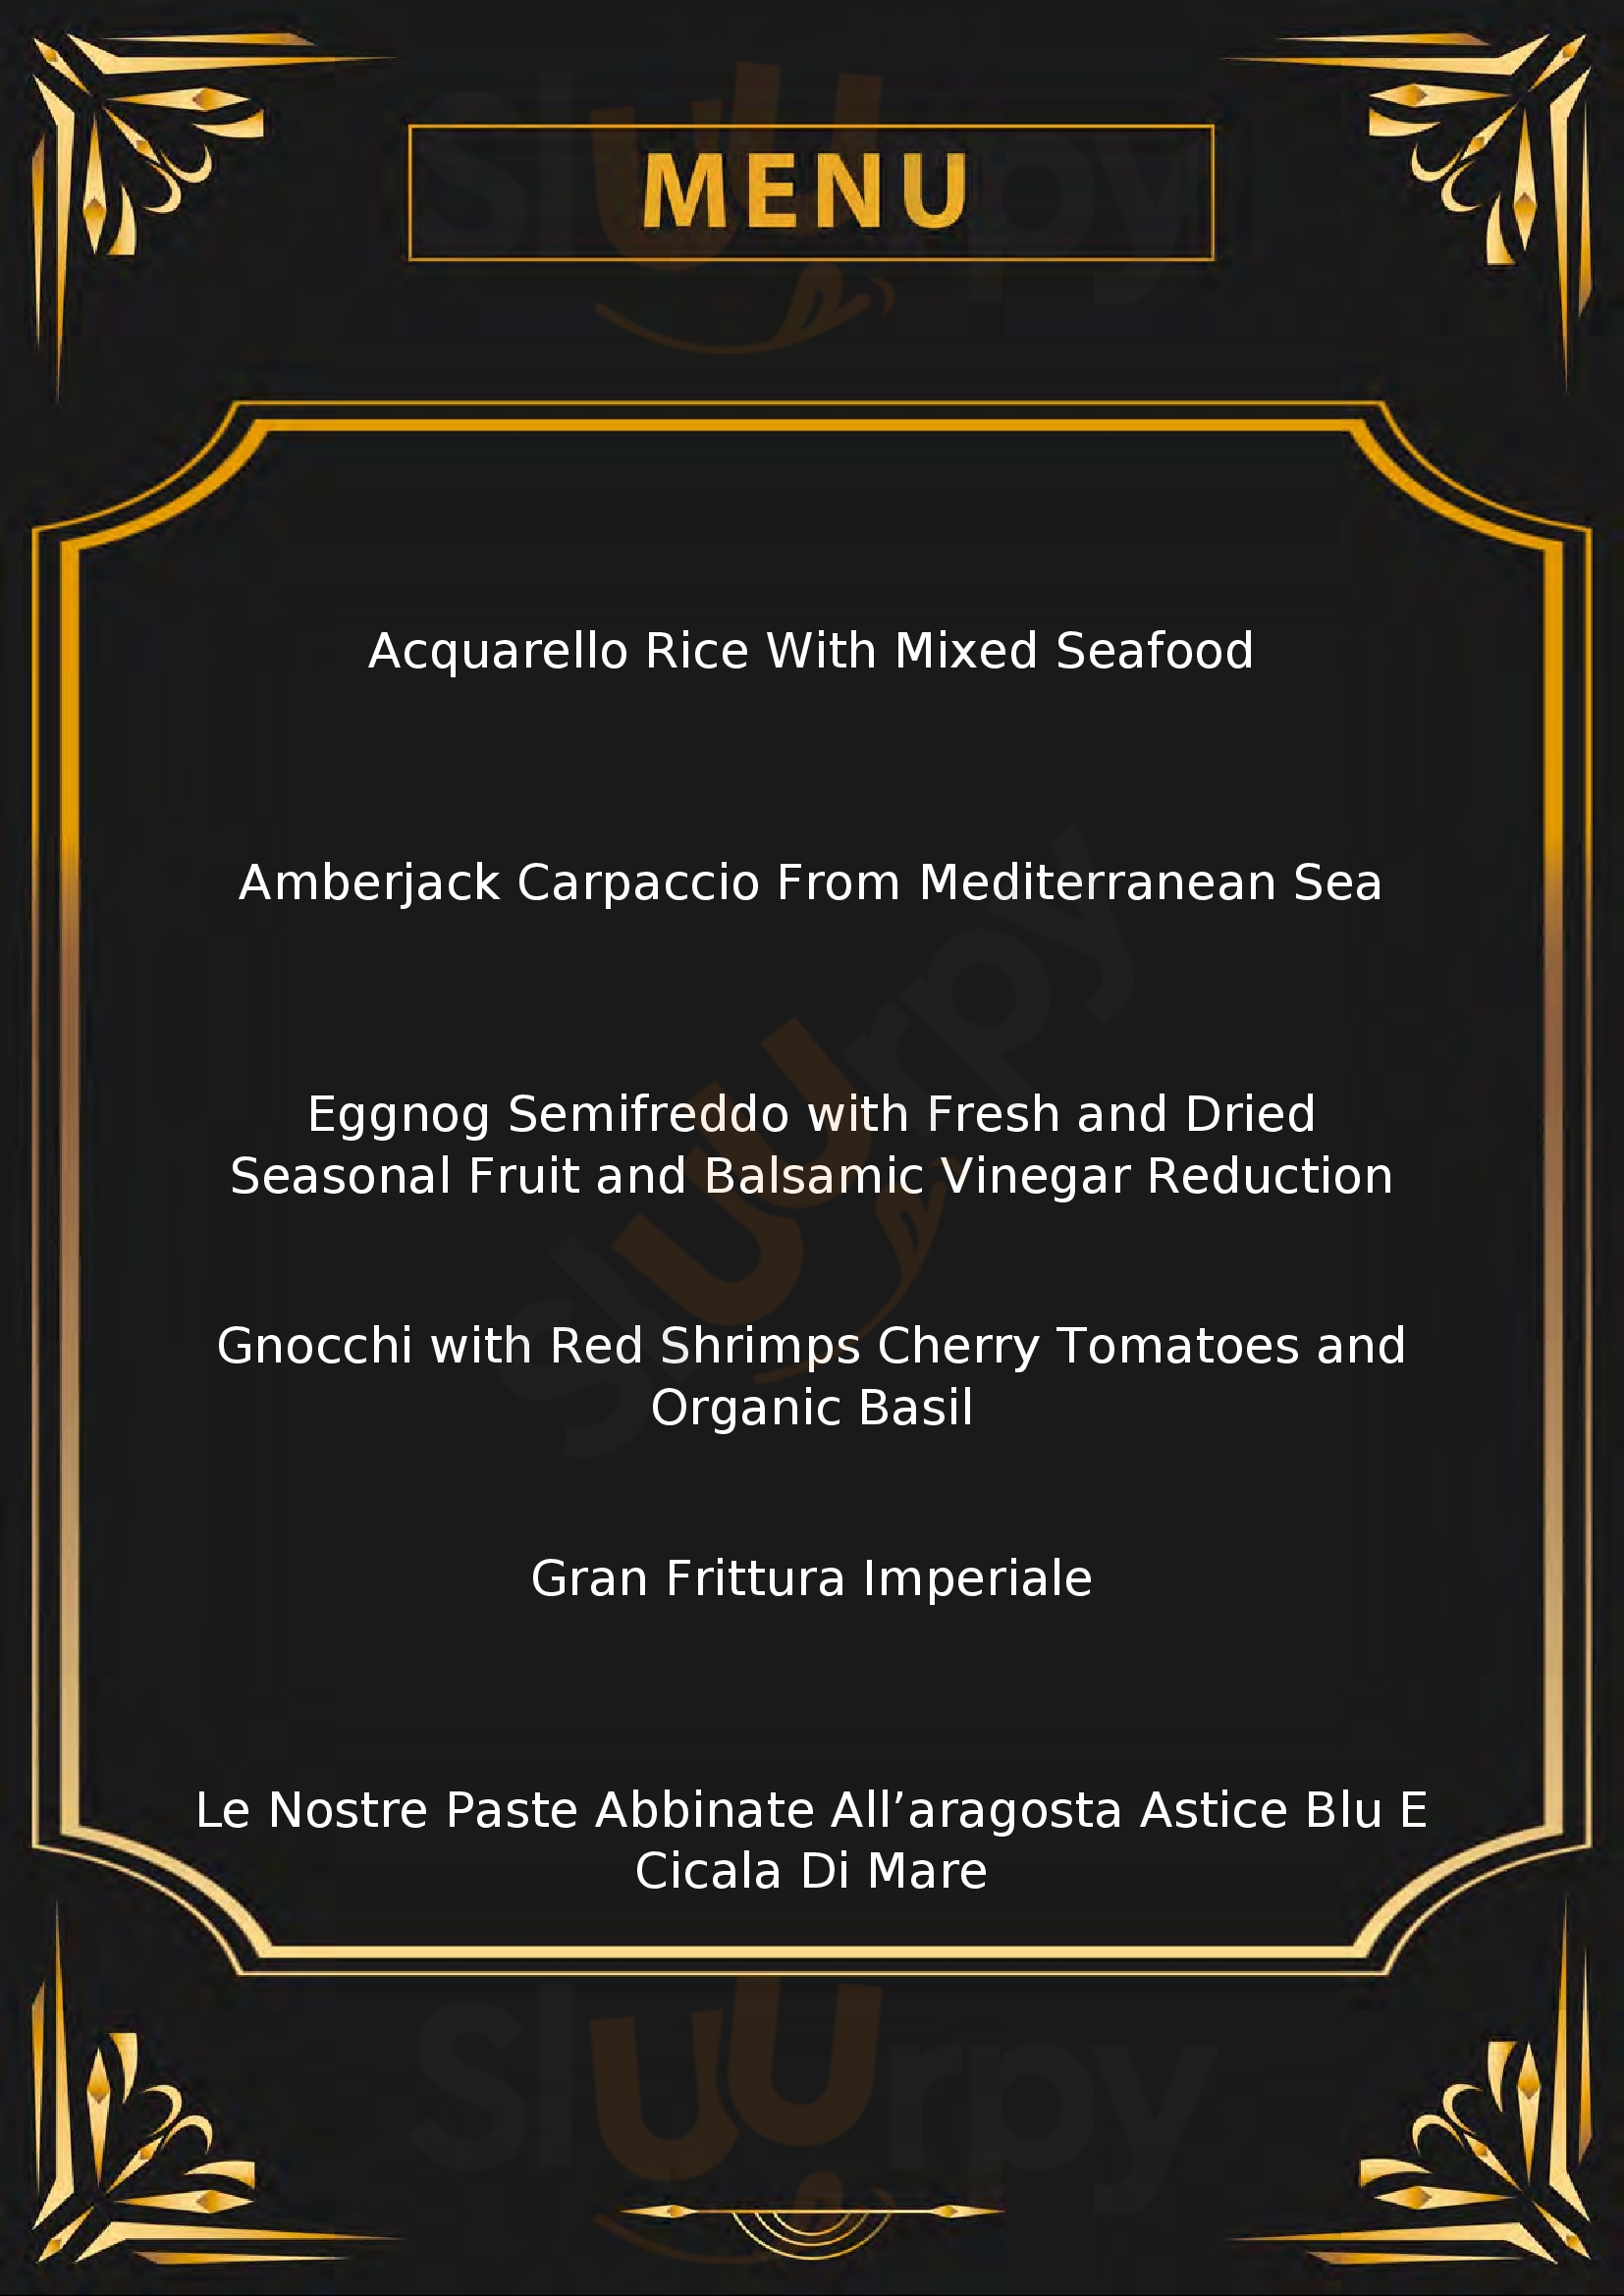 Pescado Seafood Restaurant Roma menù 1 pagina